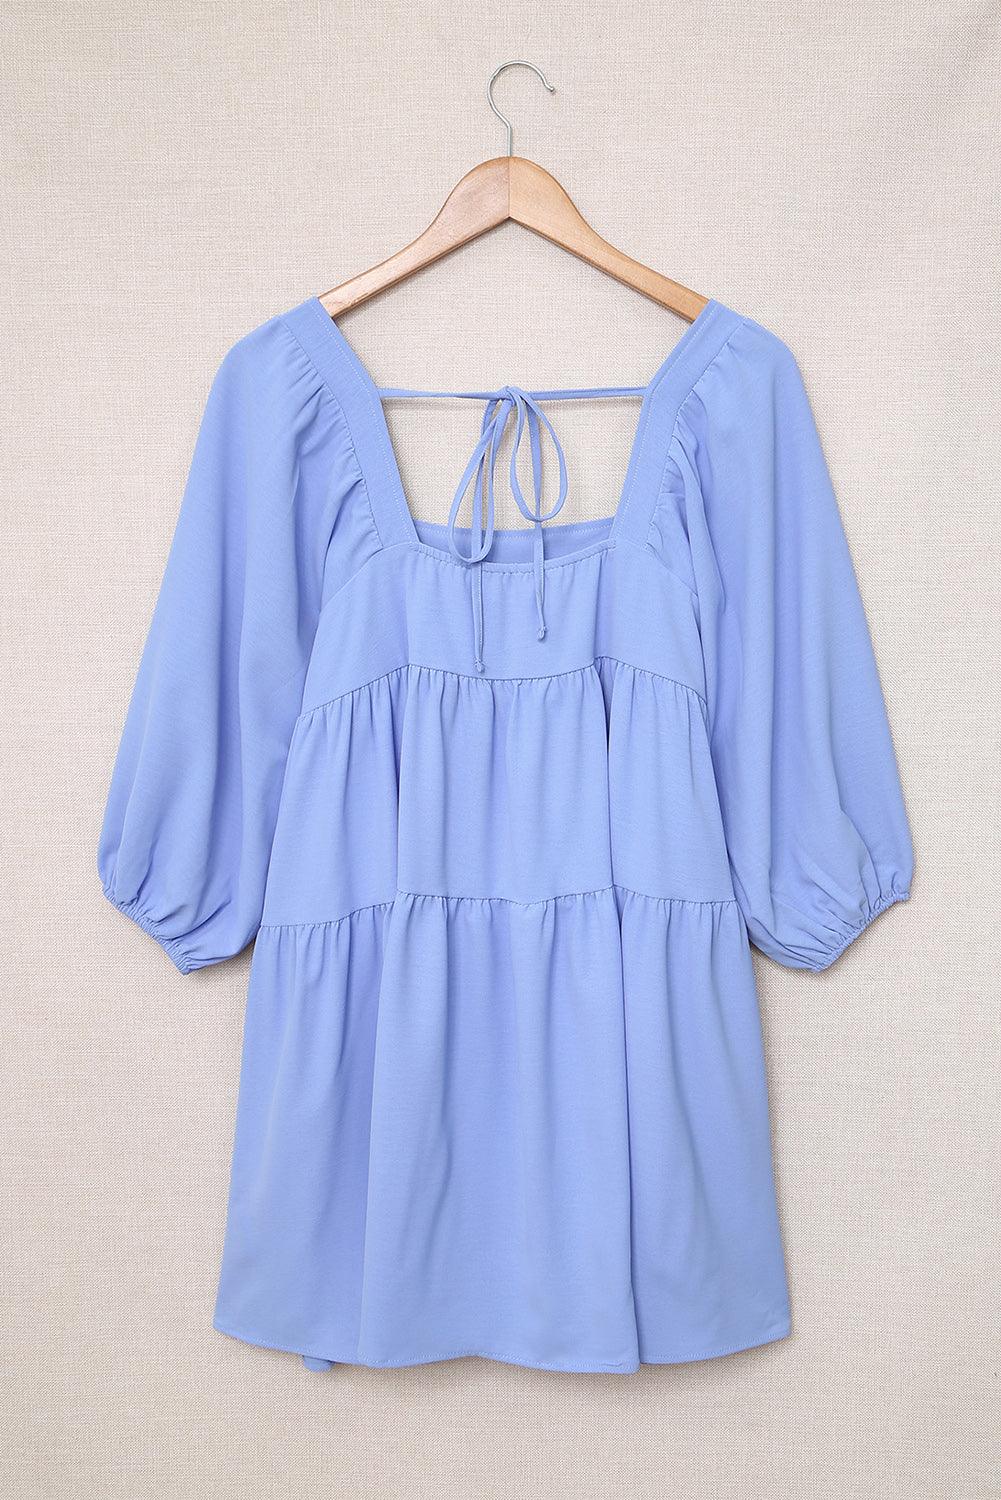 Square Neck Half Sleeve High Low Mini Dress - L & M Kee, LLC